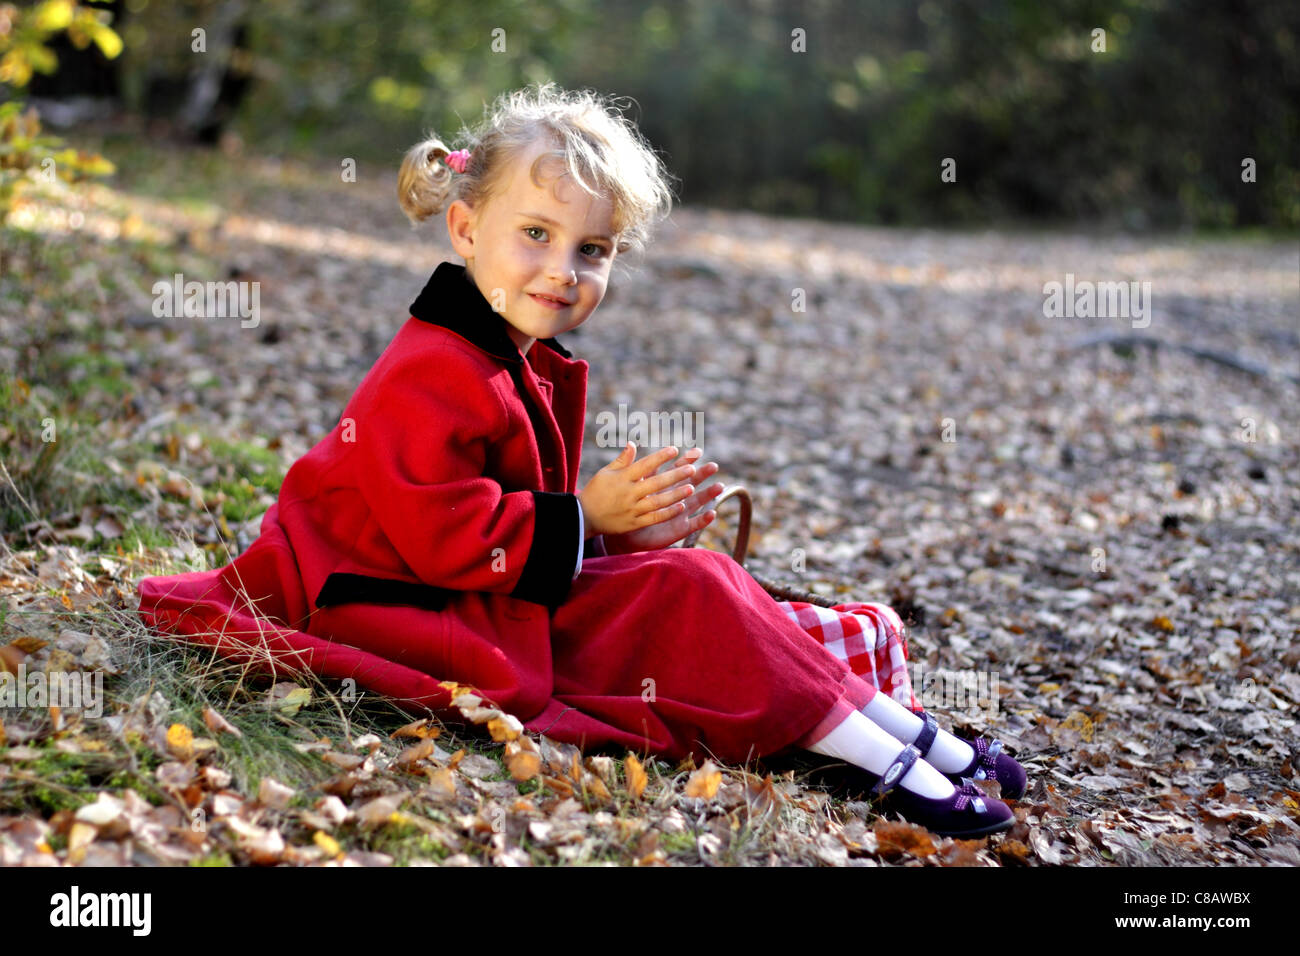 Hübsches kleines Mädchen in den Wald mit einem Korb für Pilze Stockfoto